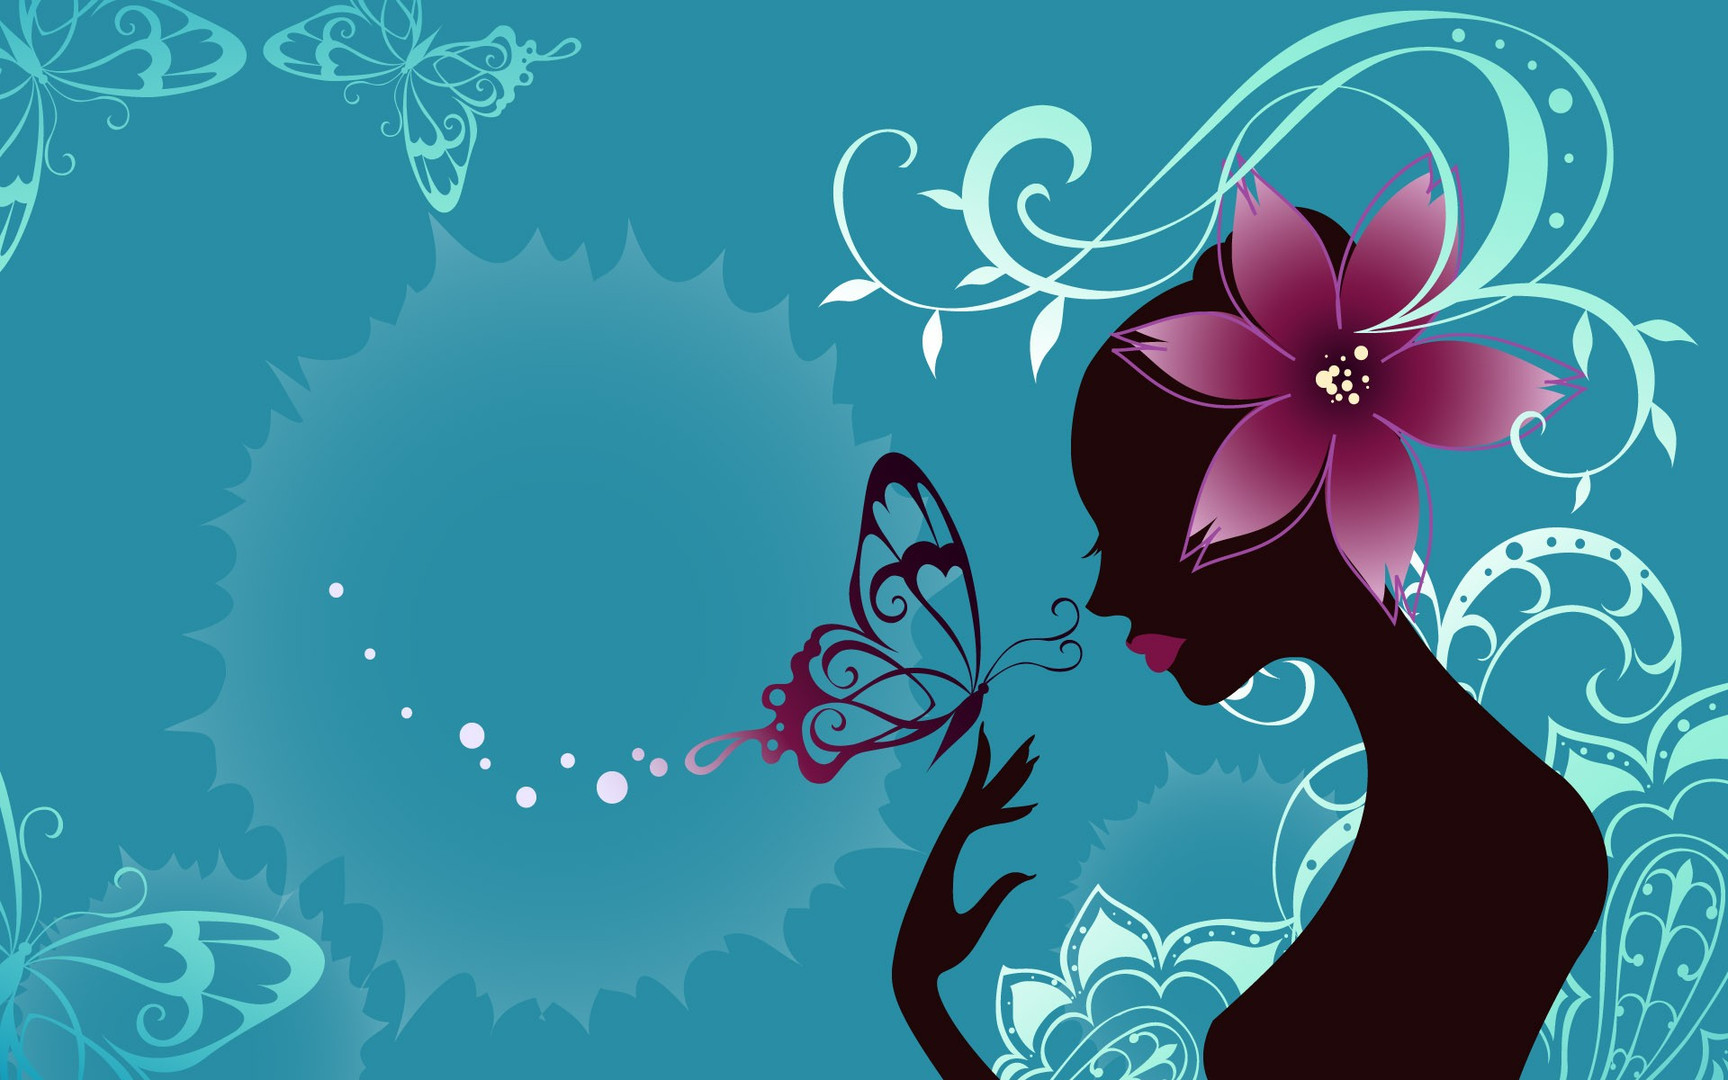 desktop girl wallpaper,graphic design,illustration,plant,floral design,visual arts